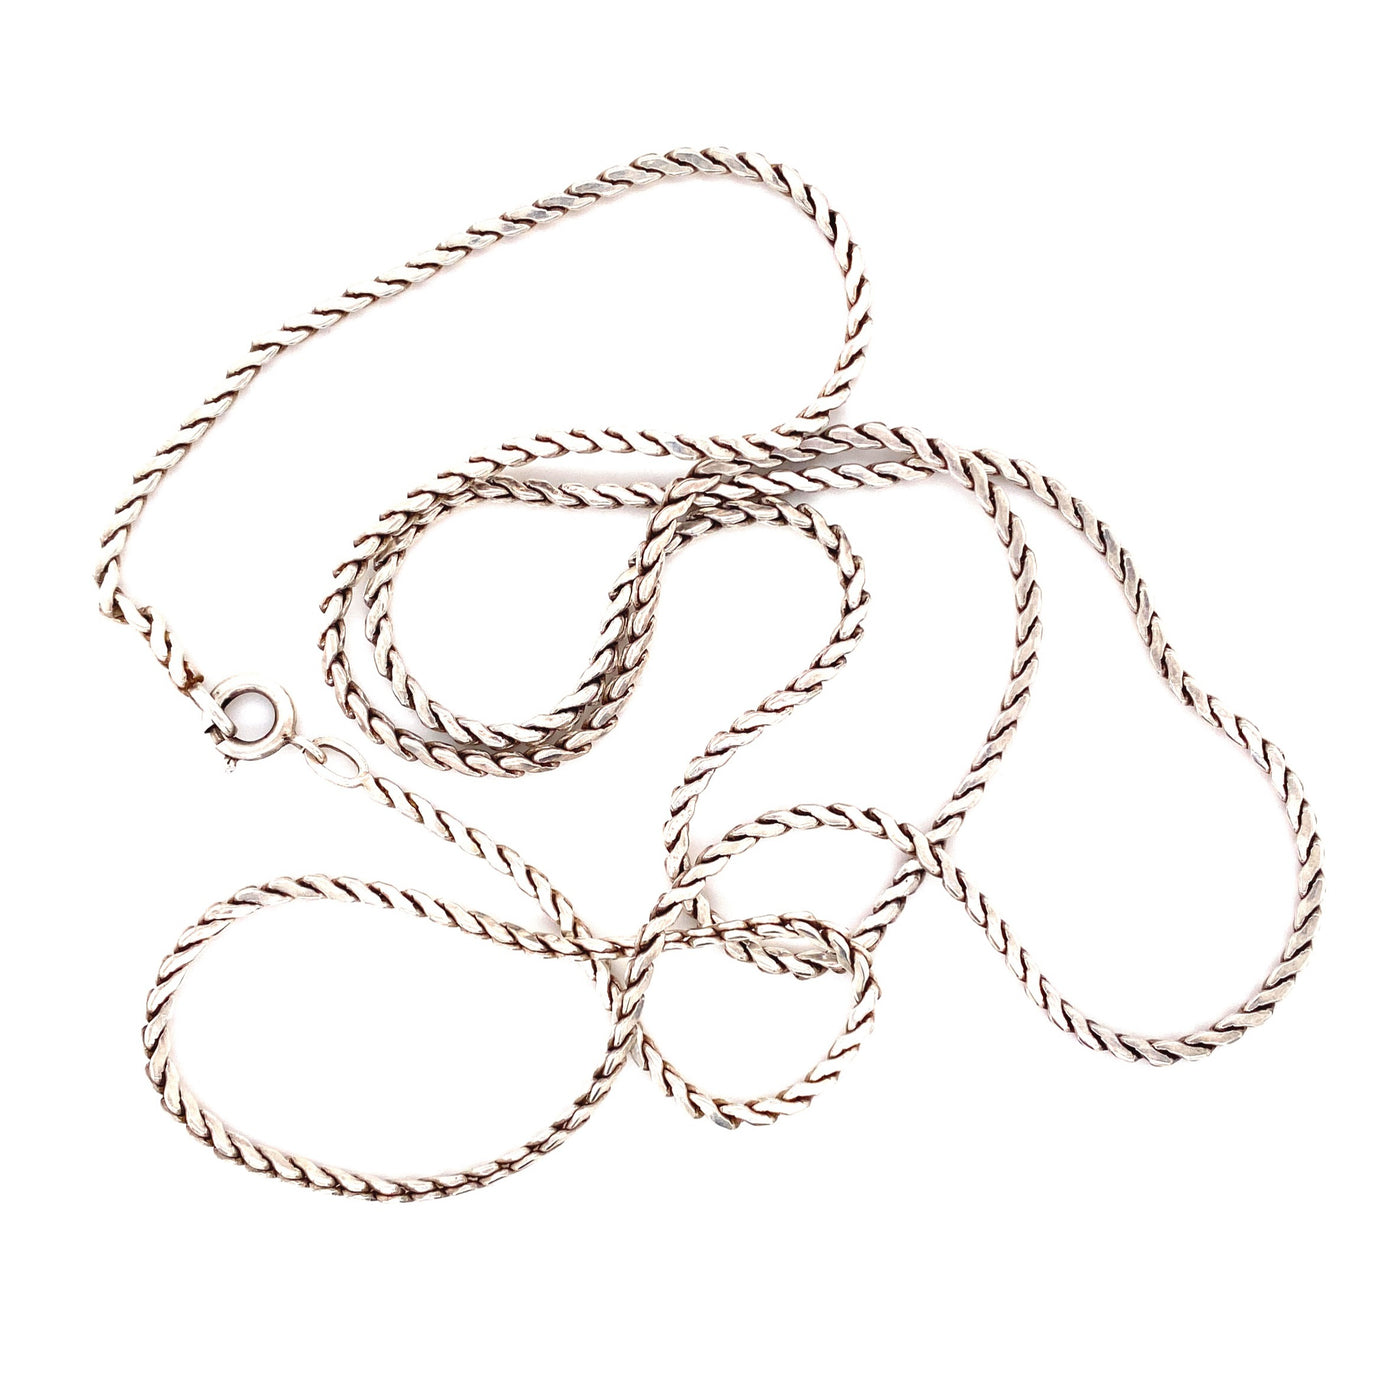 Braided Chain - Feine Silberkette im Flechtdekor